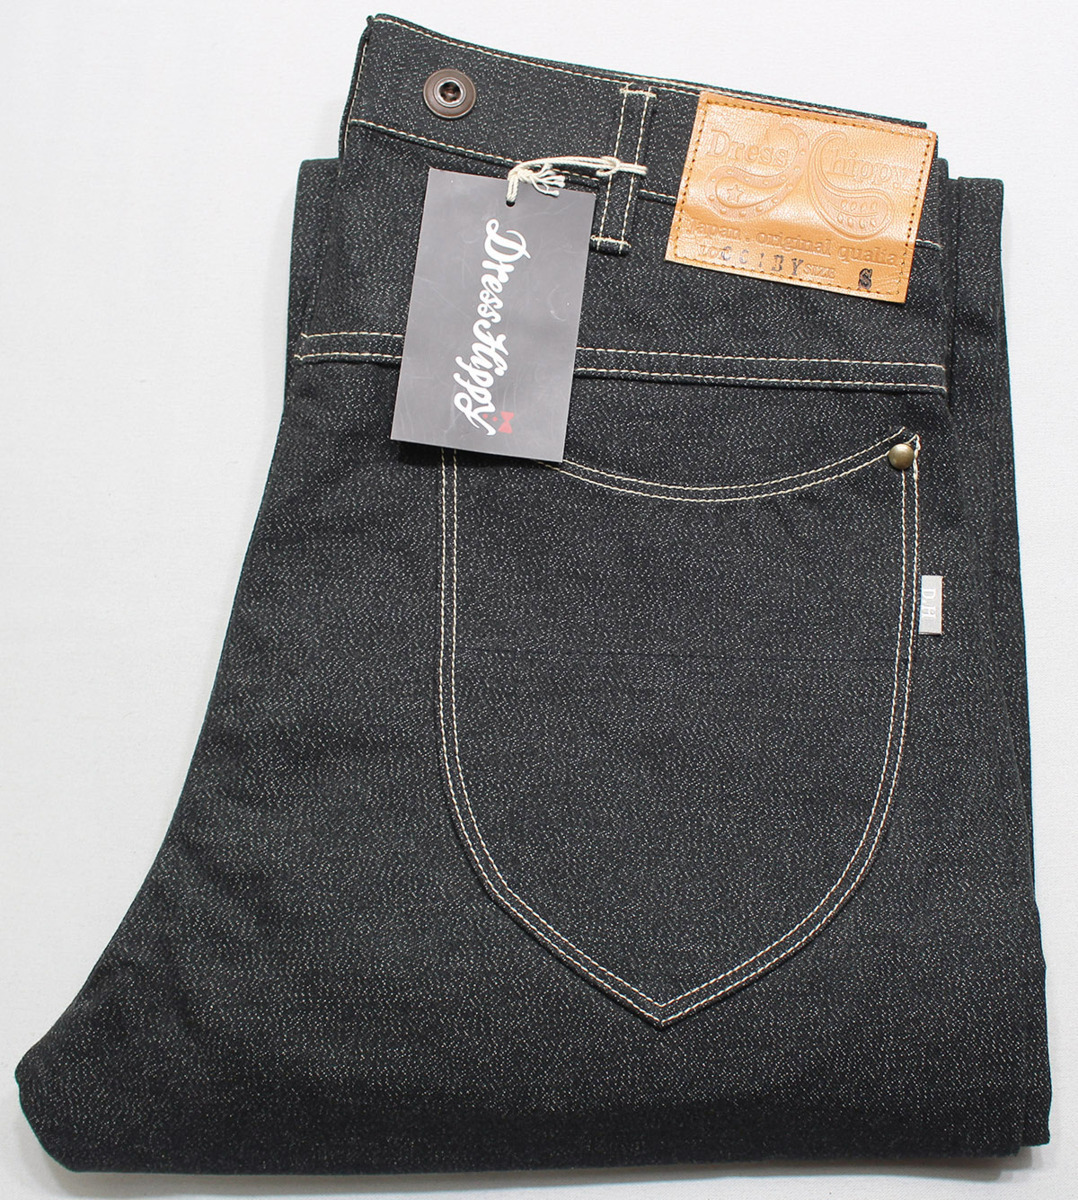 DRESS HIPPY ドレスヒッピー OLDMAN PANTS / オールドマンパンツ 新品未使用 ヘザーブラック size S / ノンパレイル